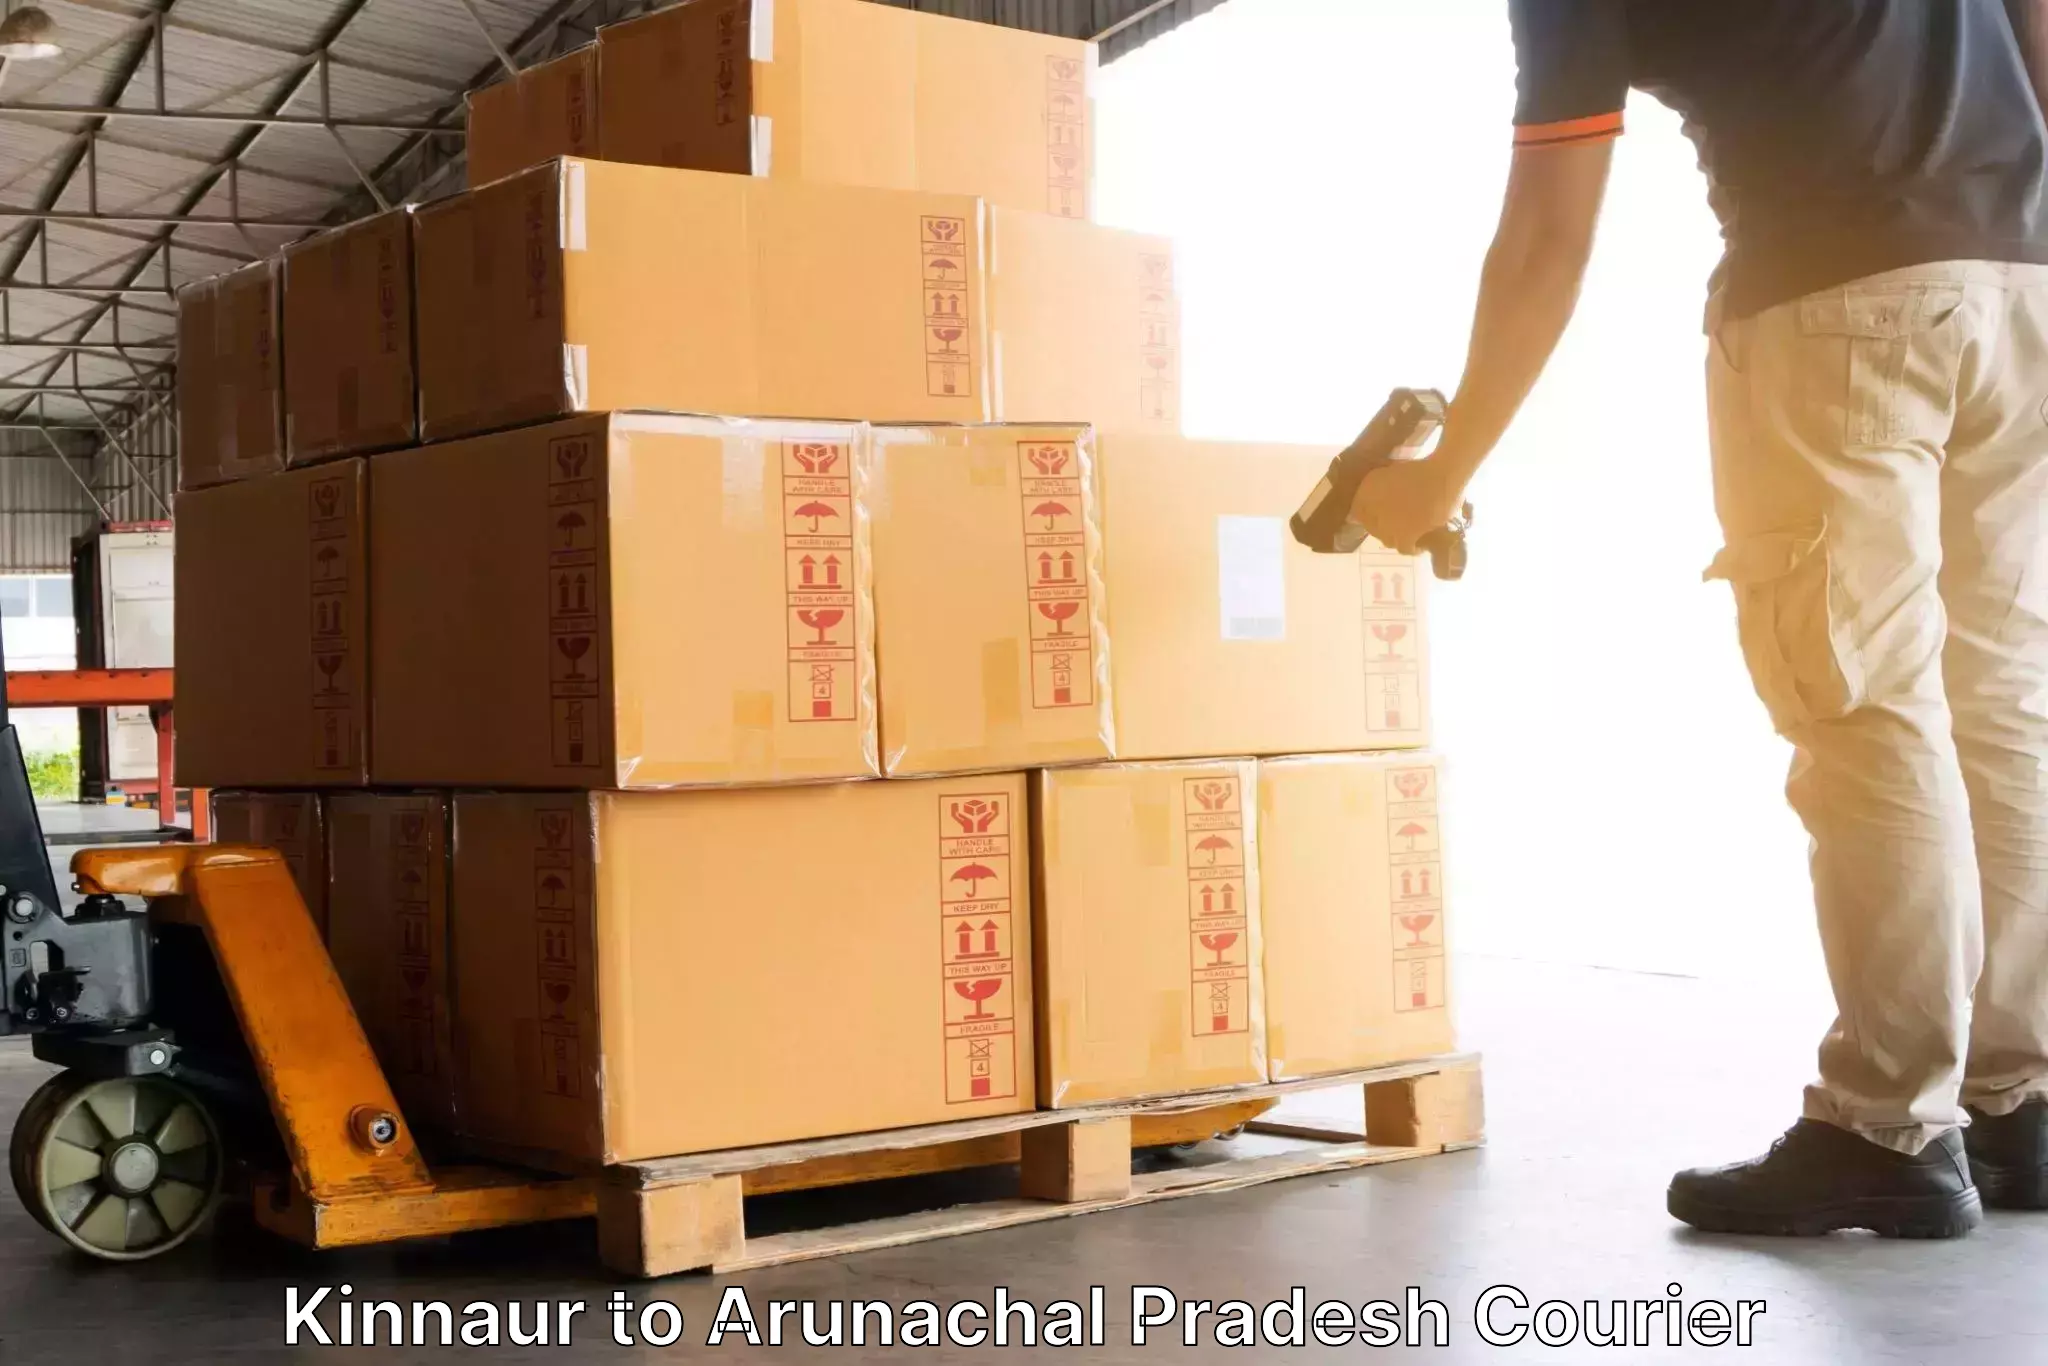 On-demand shipping options Kinnaur to Changlang